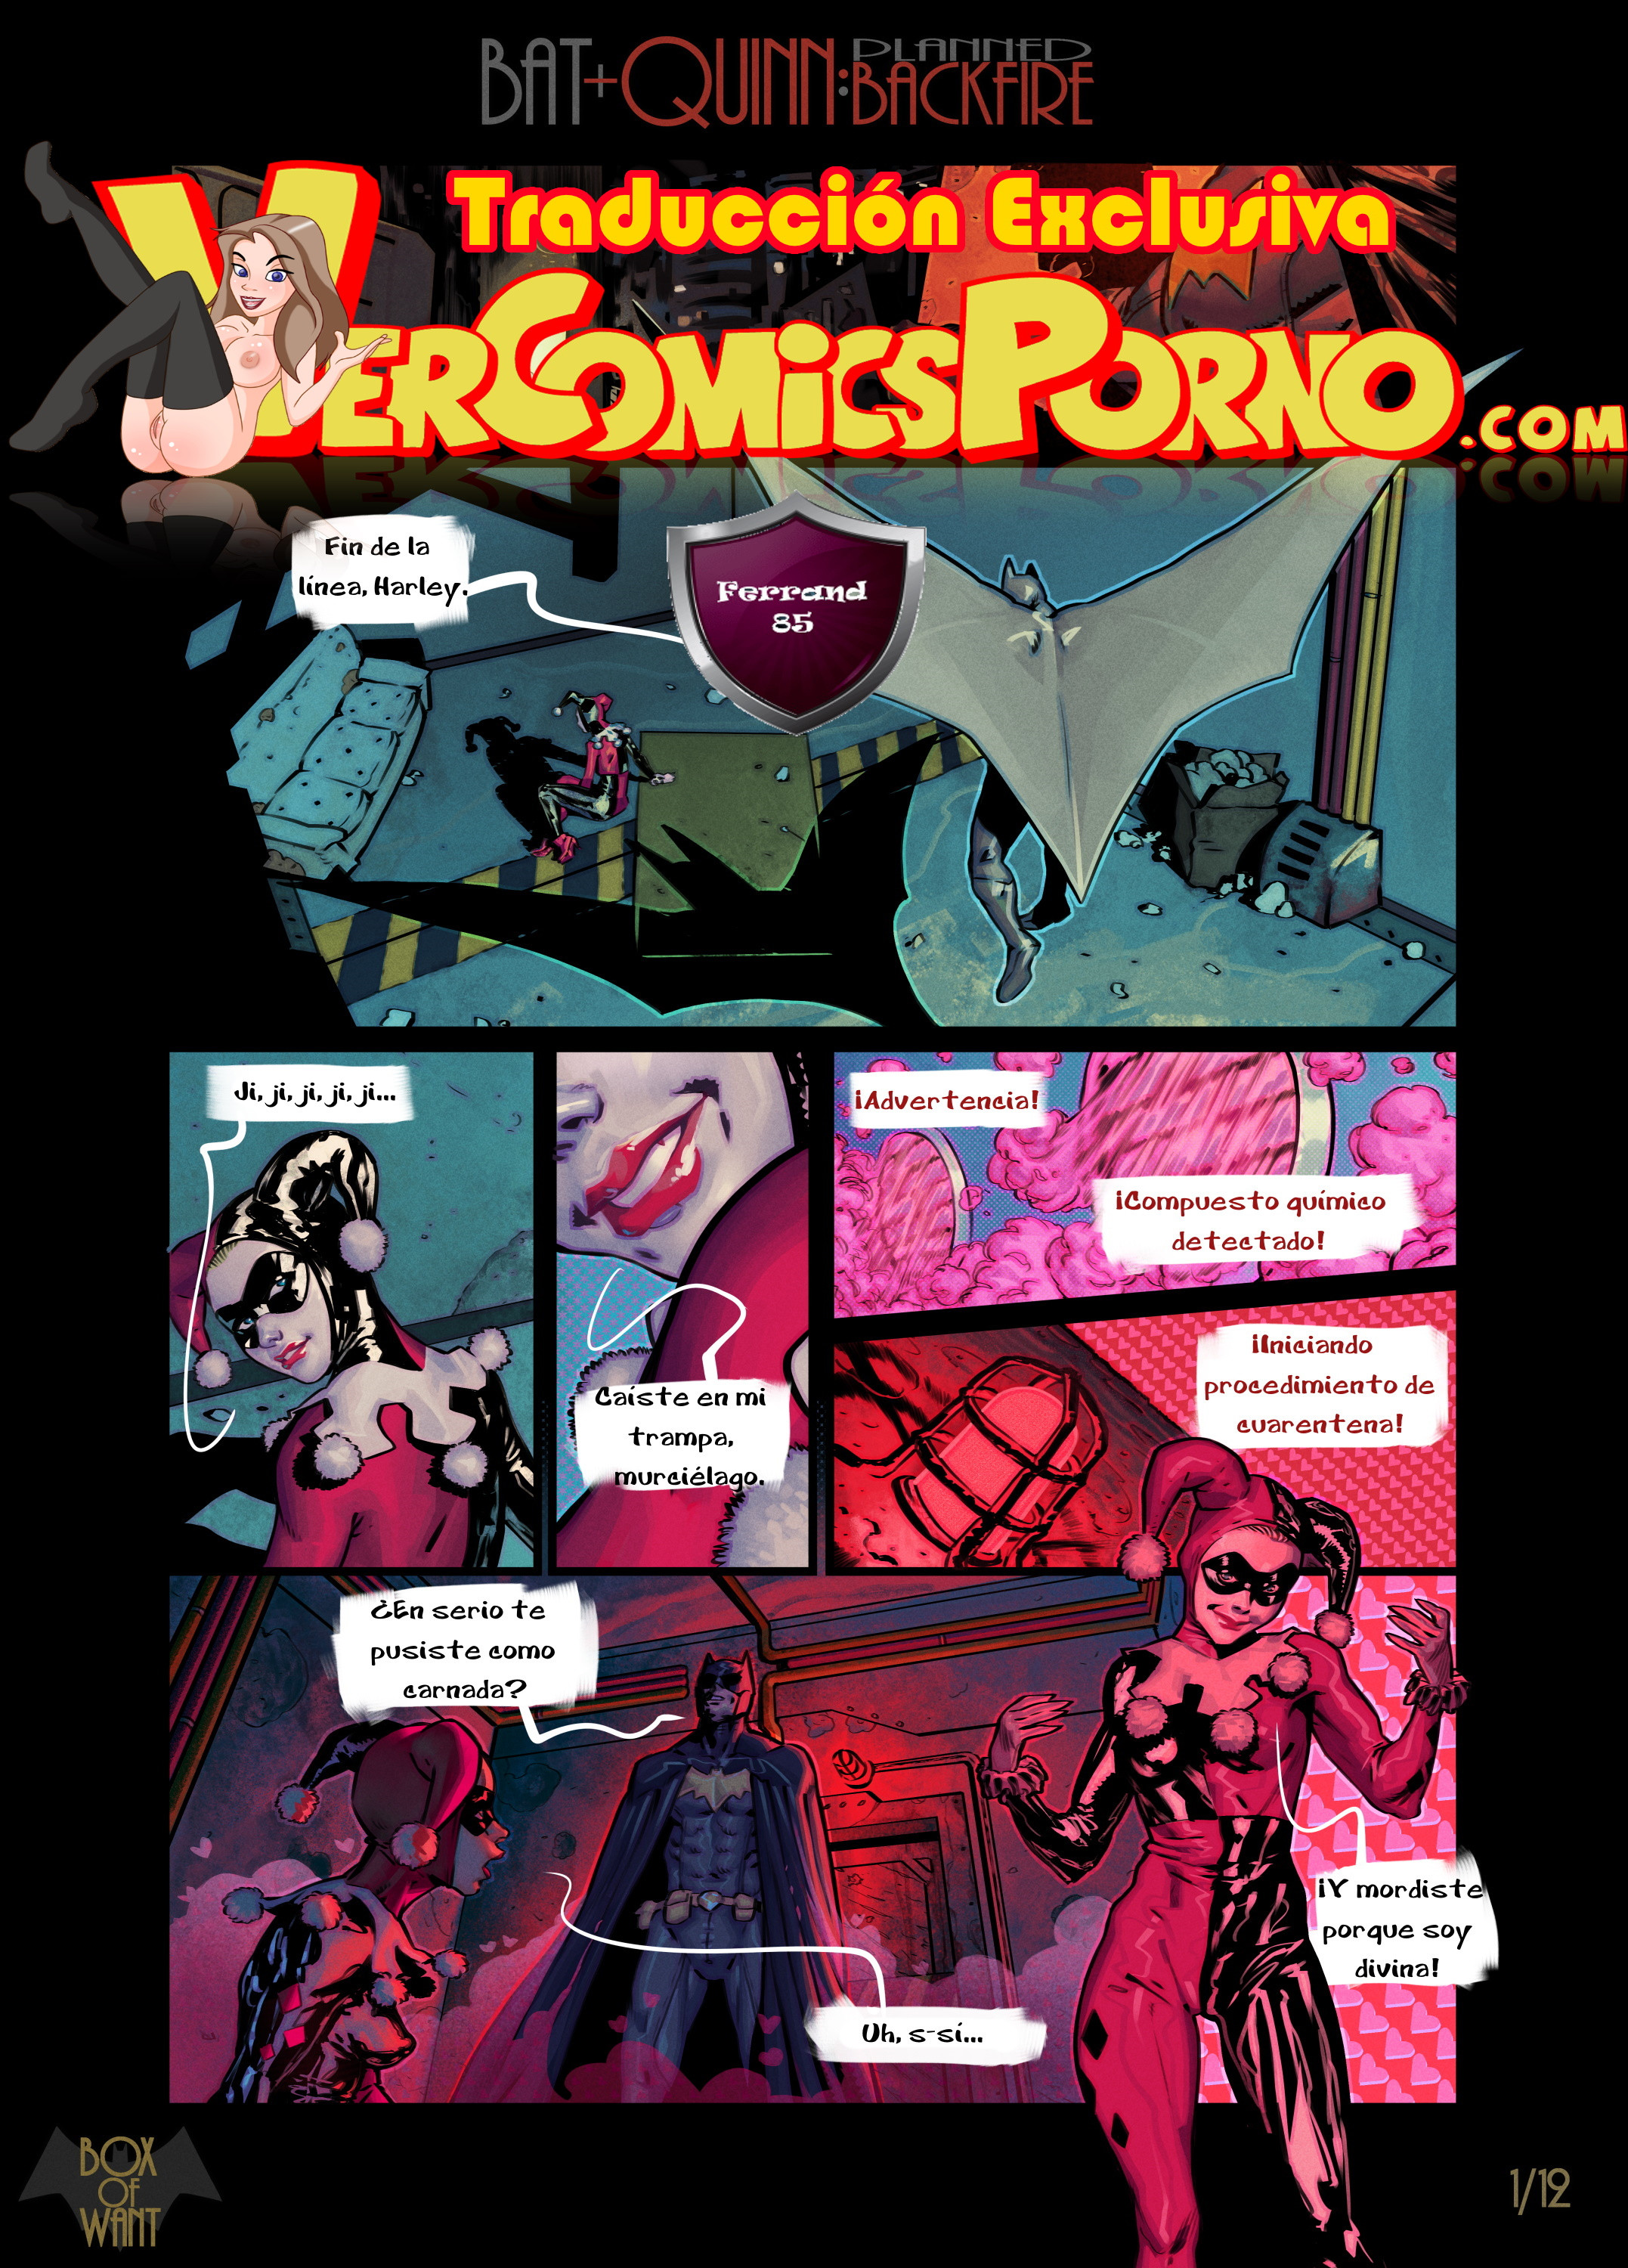 Harley Quinn - Batman y Harley Quinn: Fantasias de una noche - Vercomicsporno